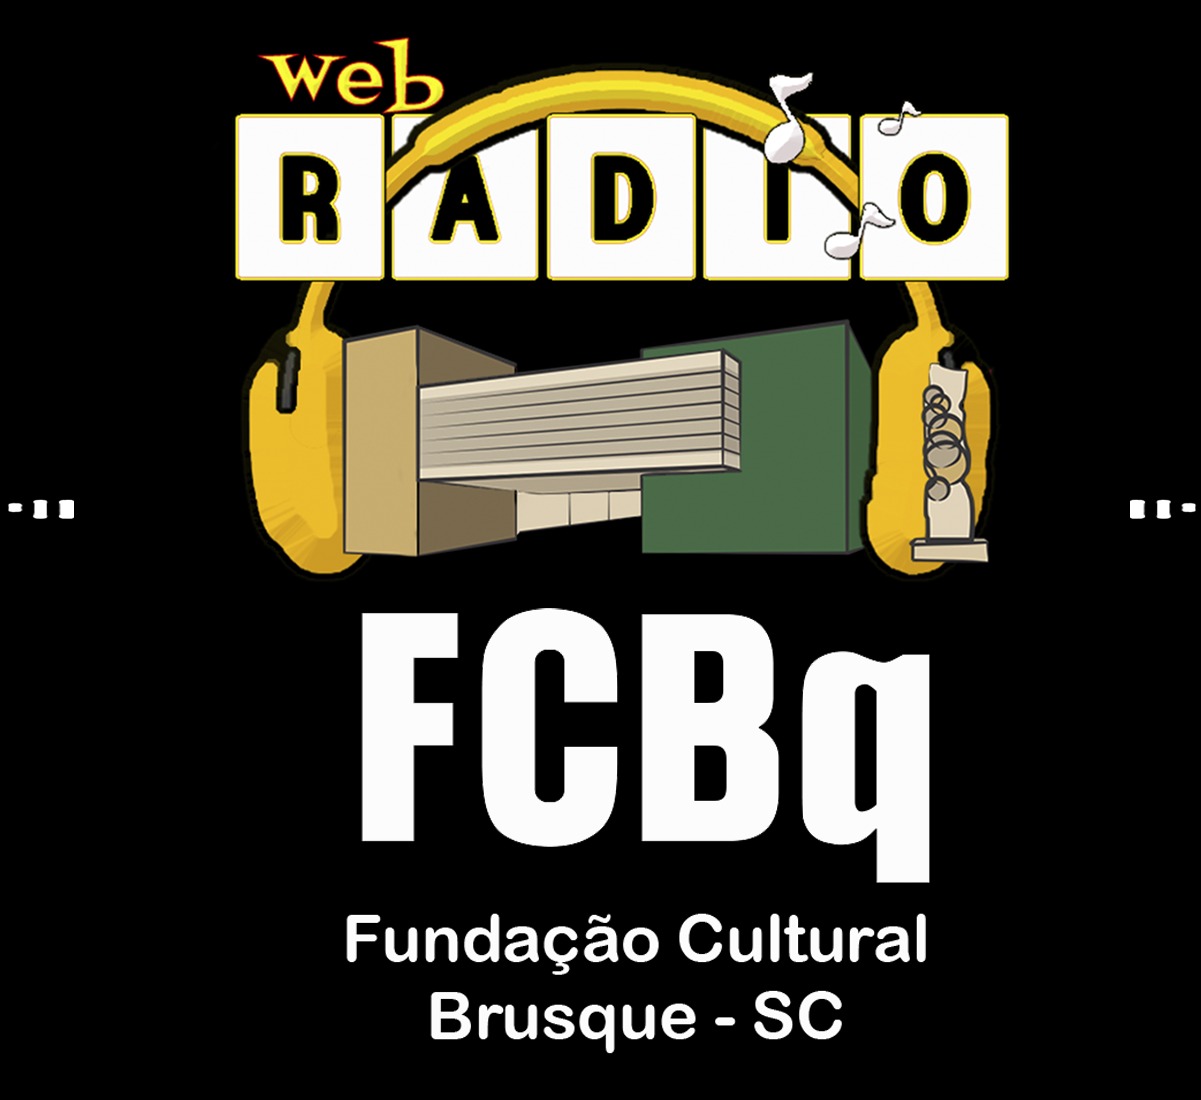 Fundação Cultural lança Web Rádio